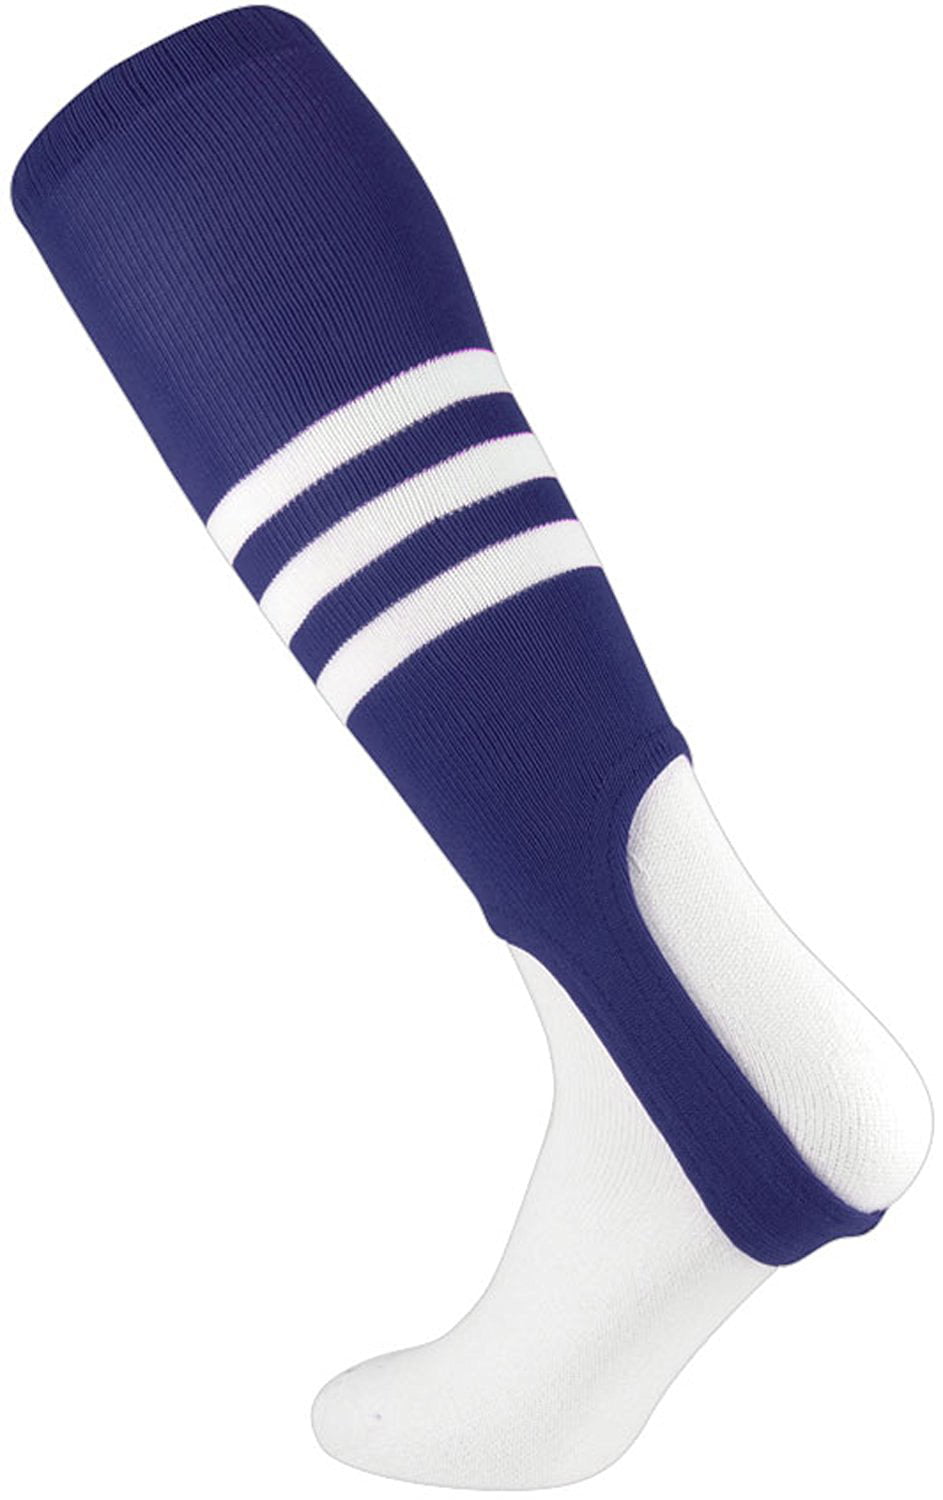 TCK Sports Pro Builder Baseball Socks Navy/Columbia Blue/White 